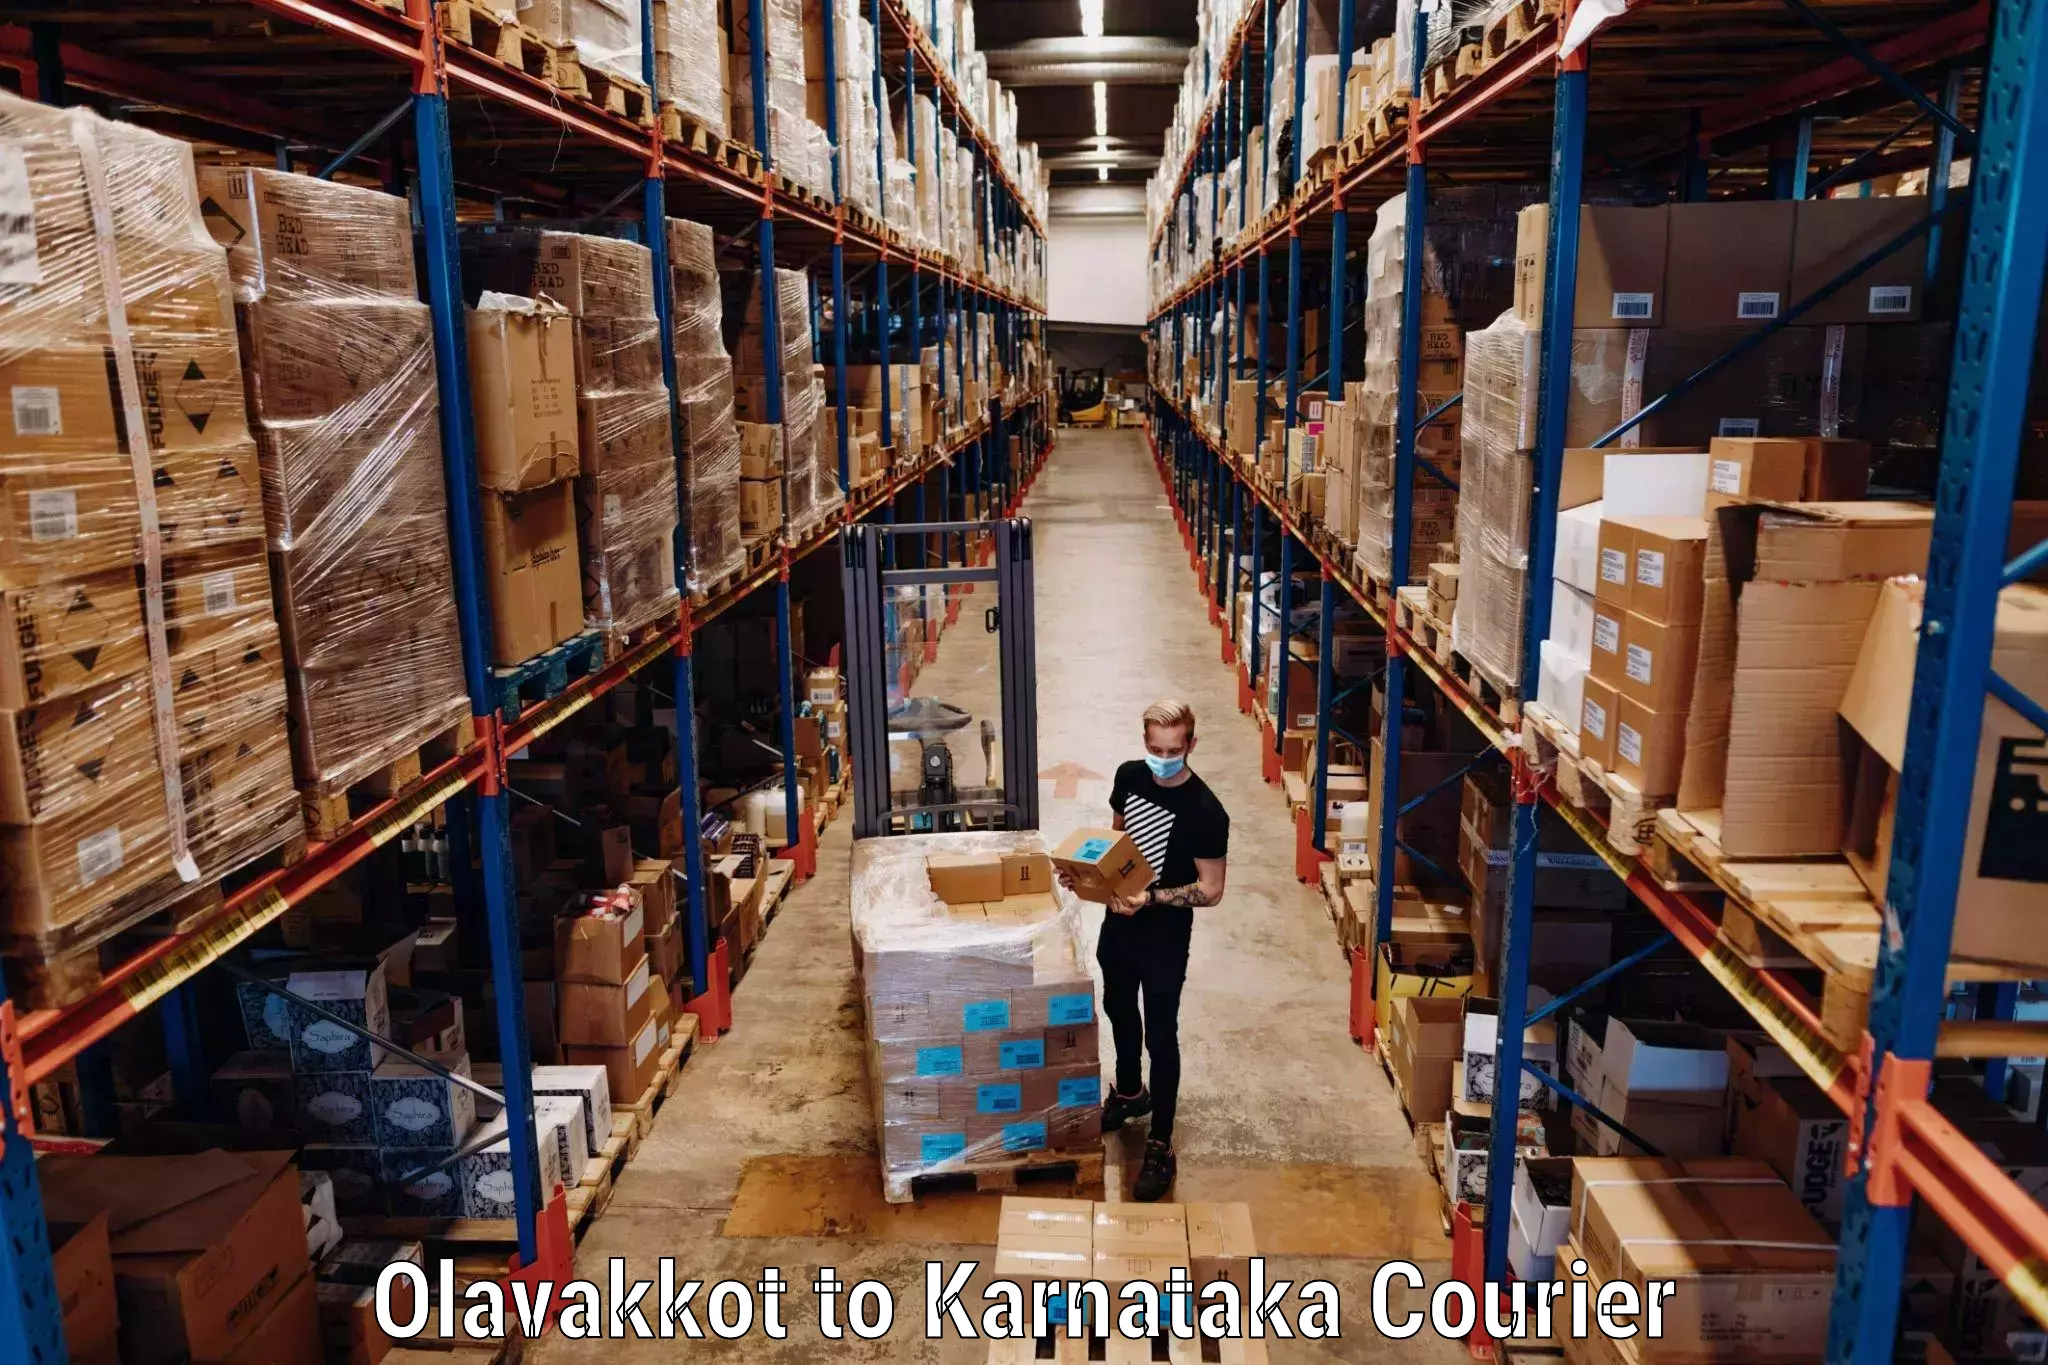 Baggage shipping service Olavakkot to Laxmeshwar